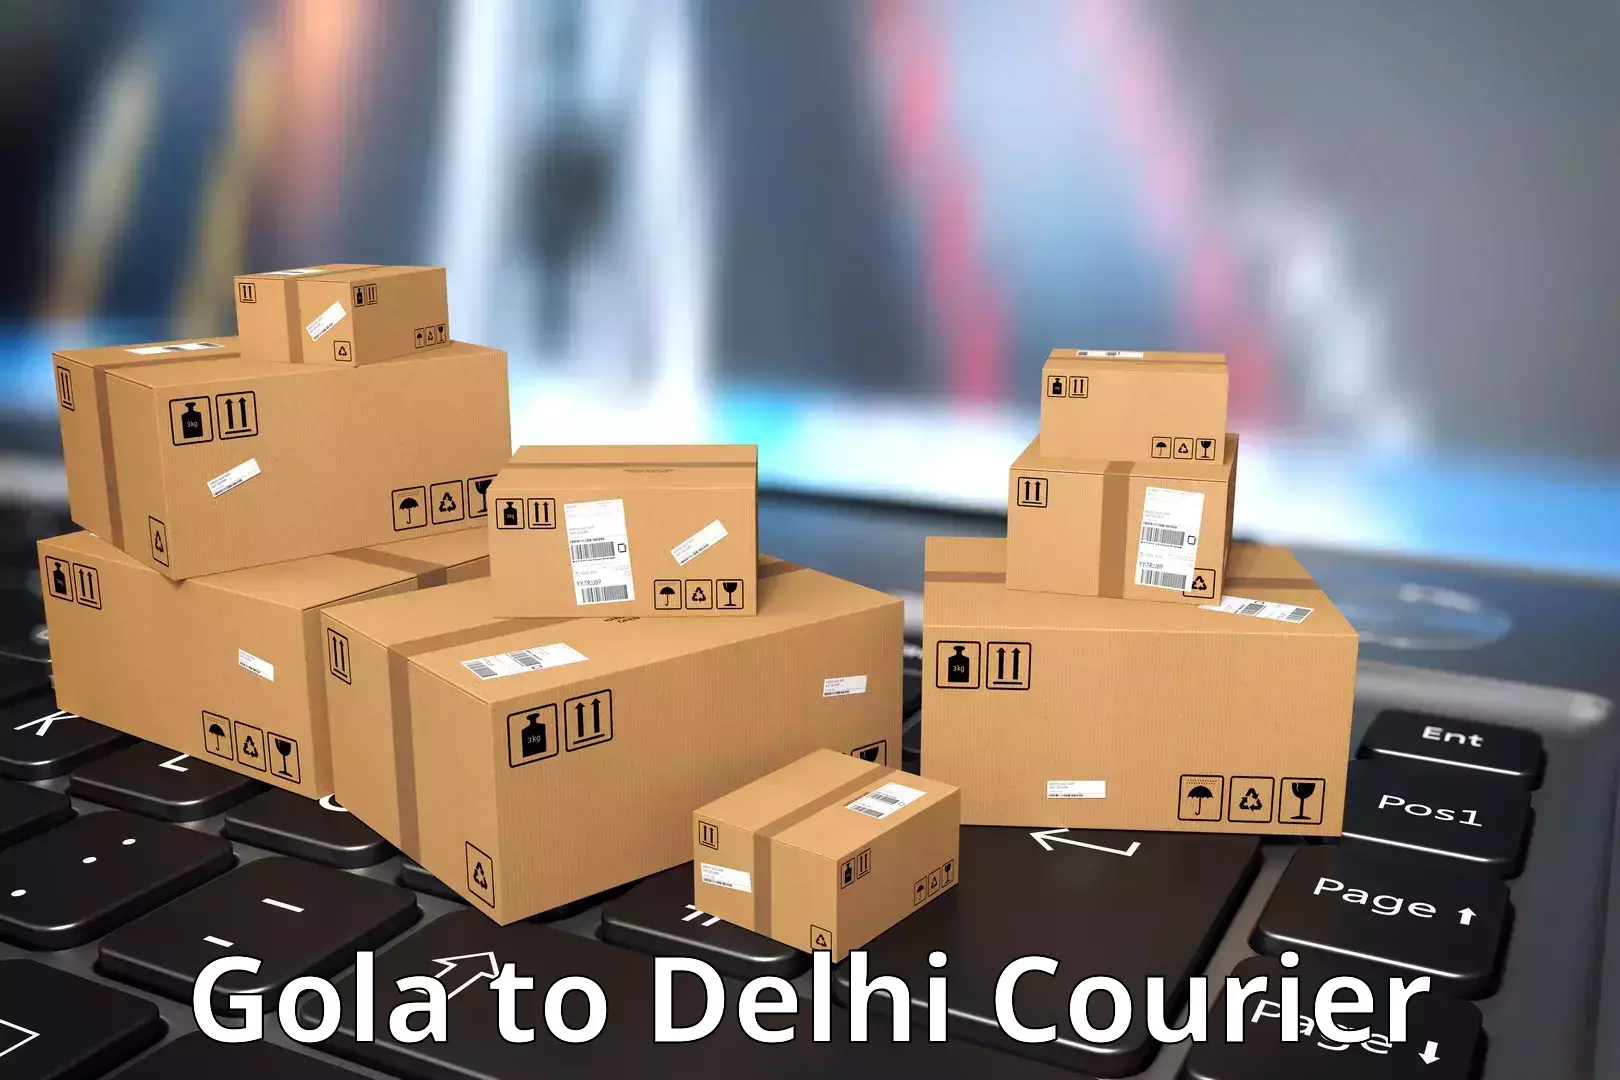 Courier service comparison Gola to Delhi